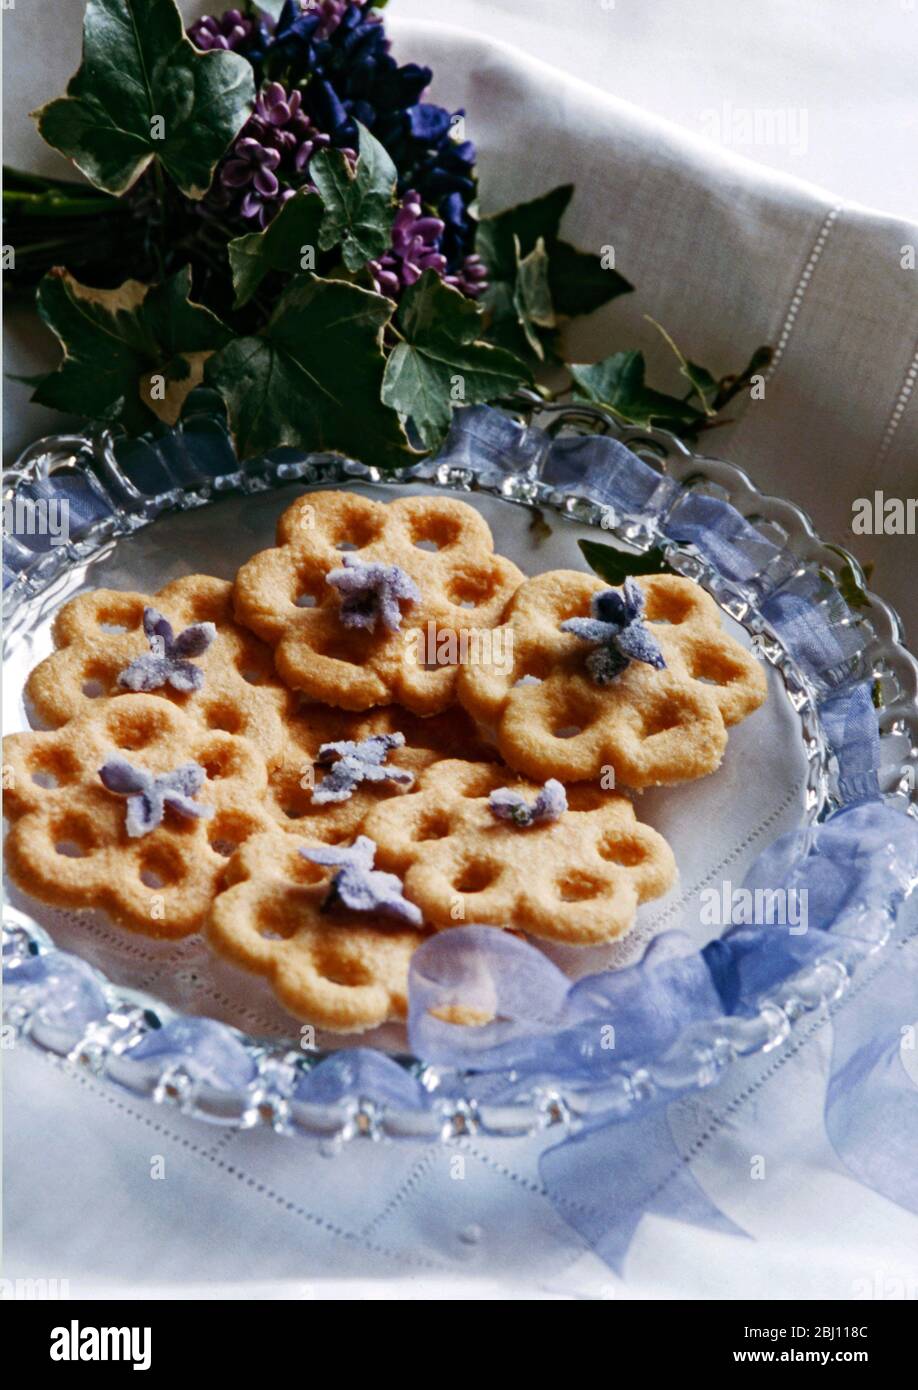 Placa de cristal antigua roscada con cinta de gasa malva con galletas delicadas con aroma violeta - Foto de stock